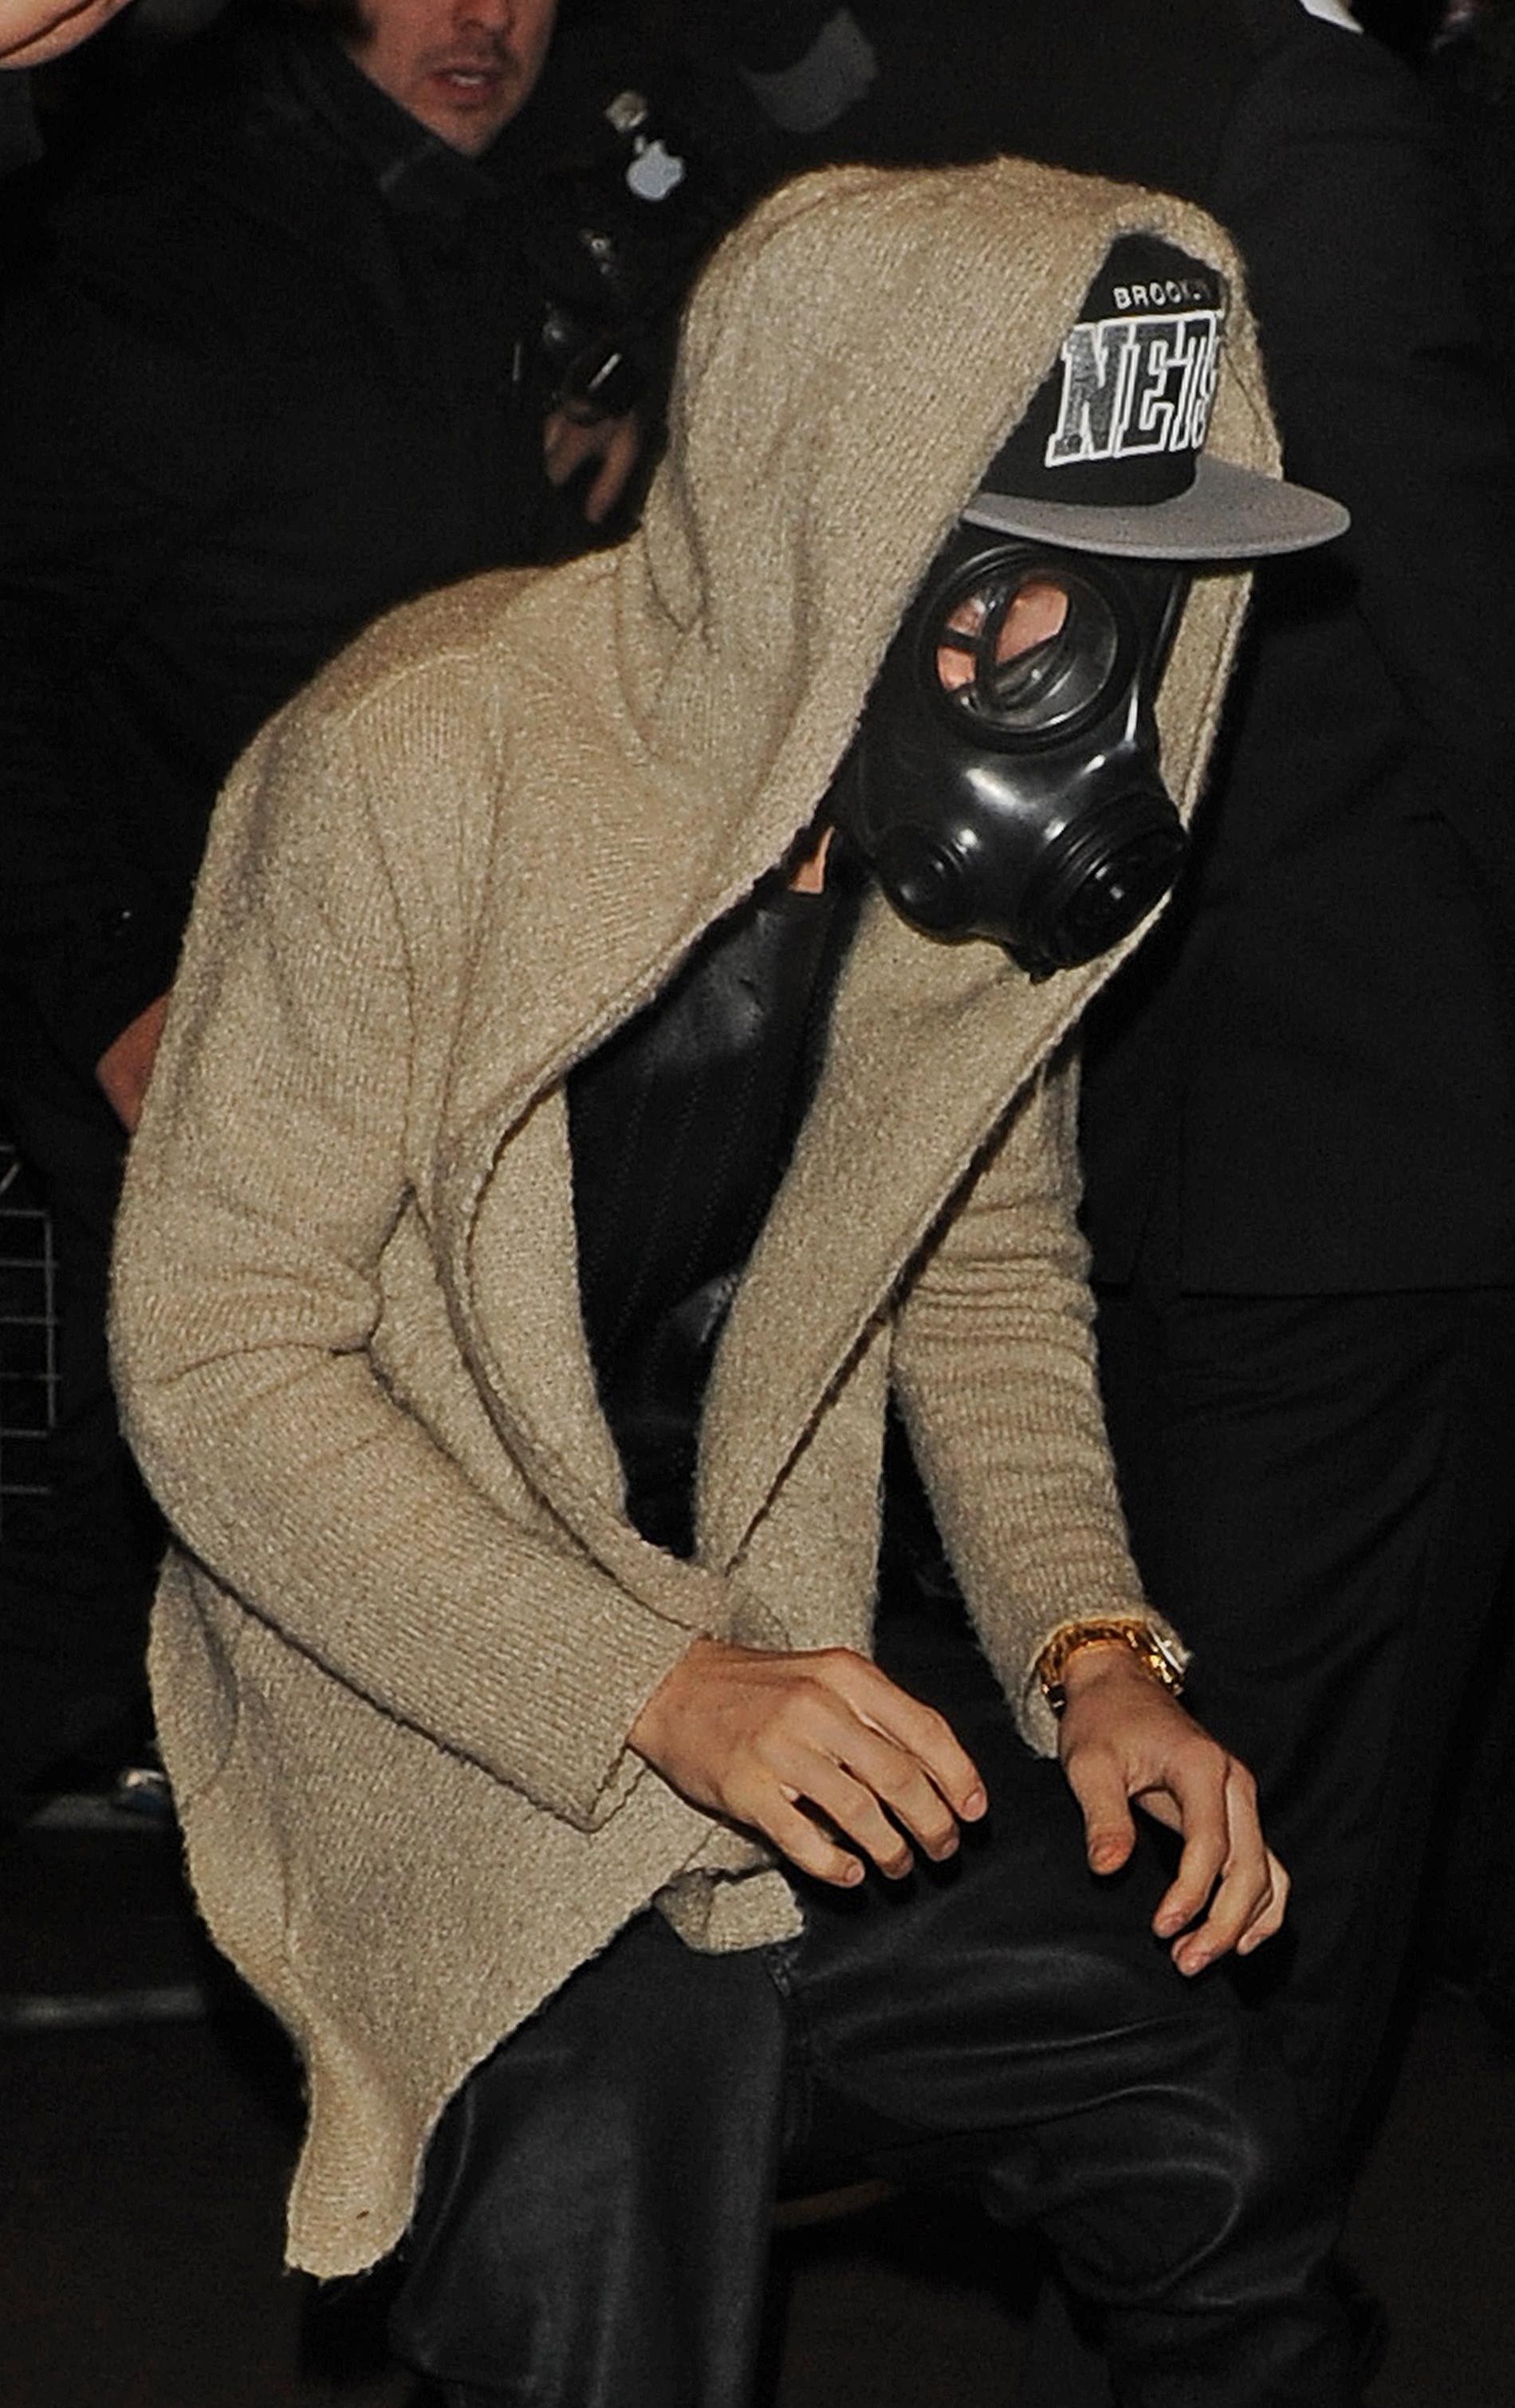 Justin Bieber i gasmask Nöjesbladet har spekulerat kring Justins användande av gasmask. Kanske stjärnans luktorgan är lite väl mottagliga och därav masken?